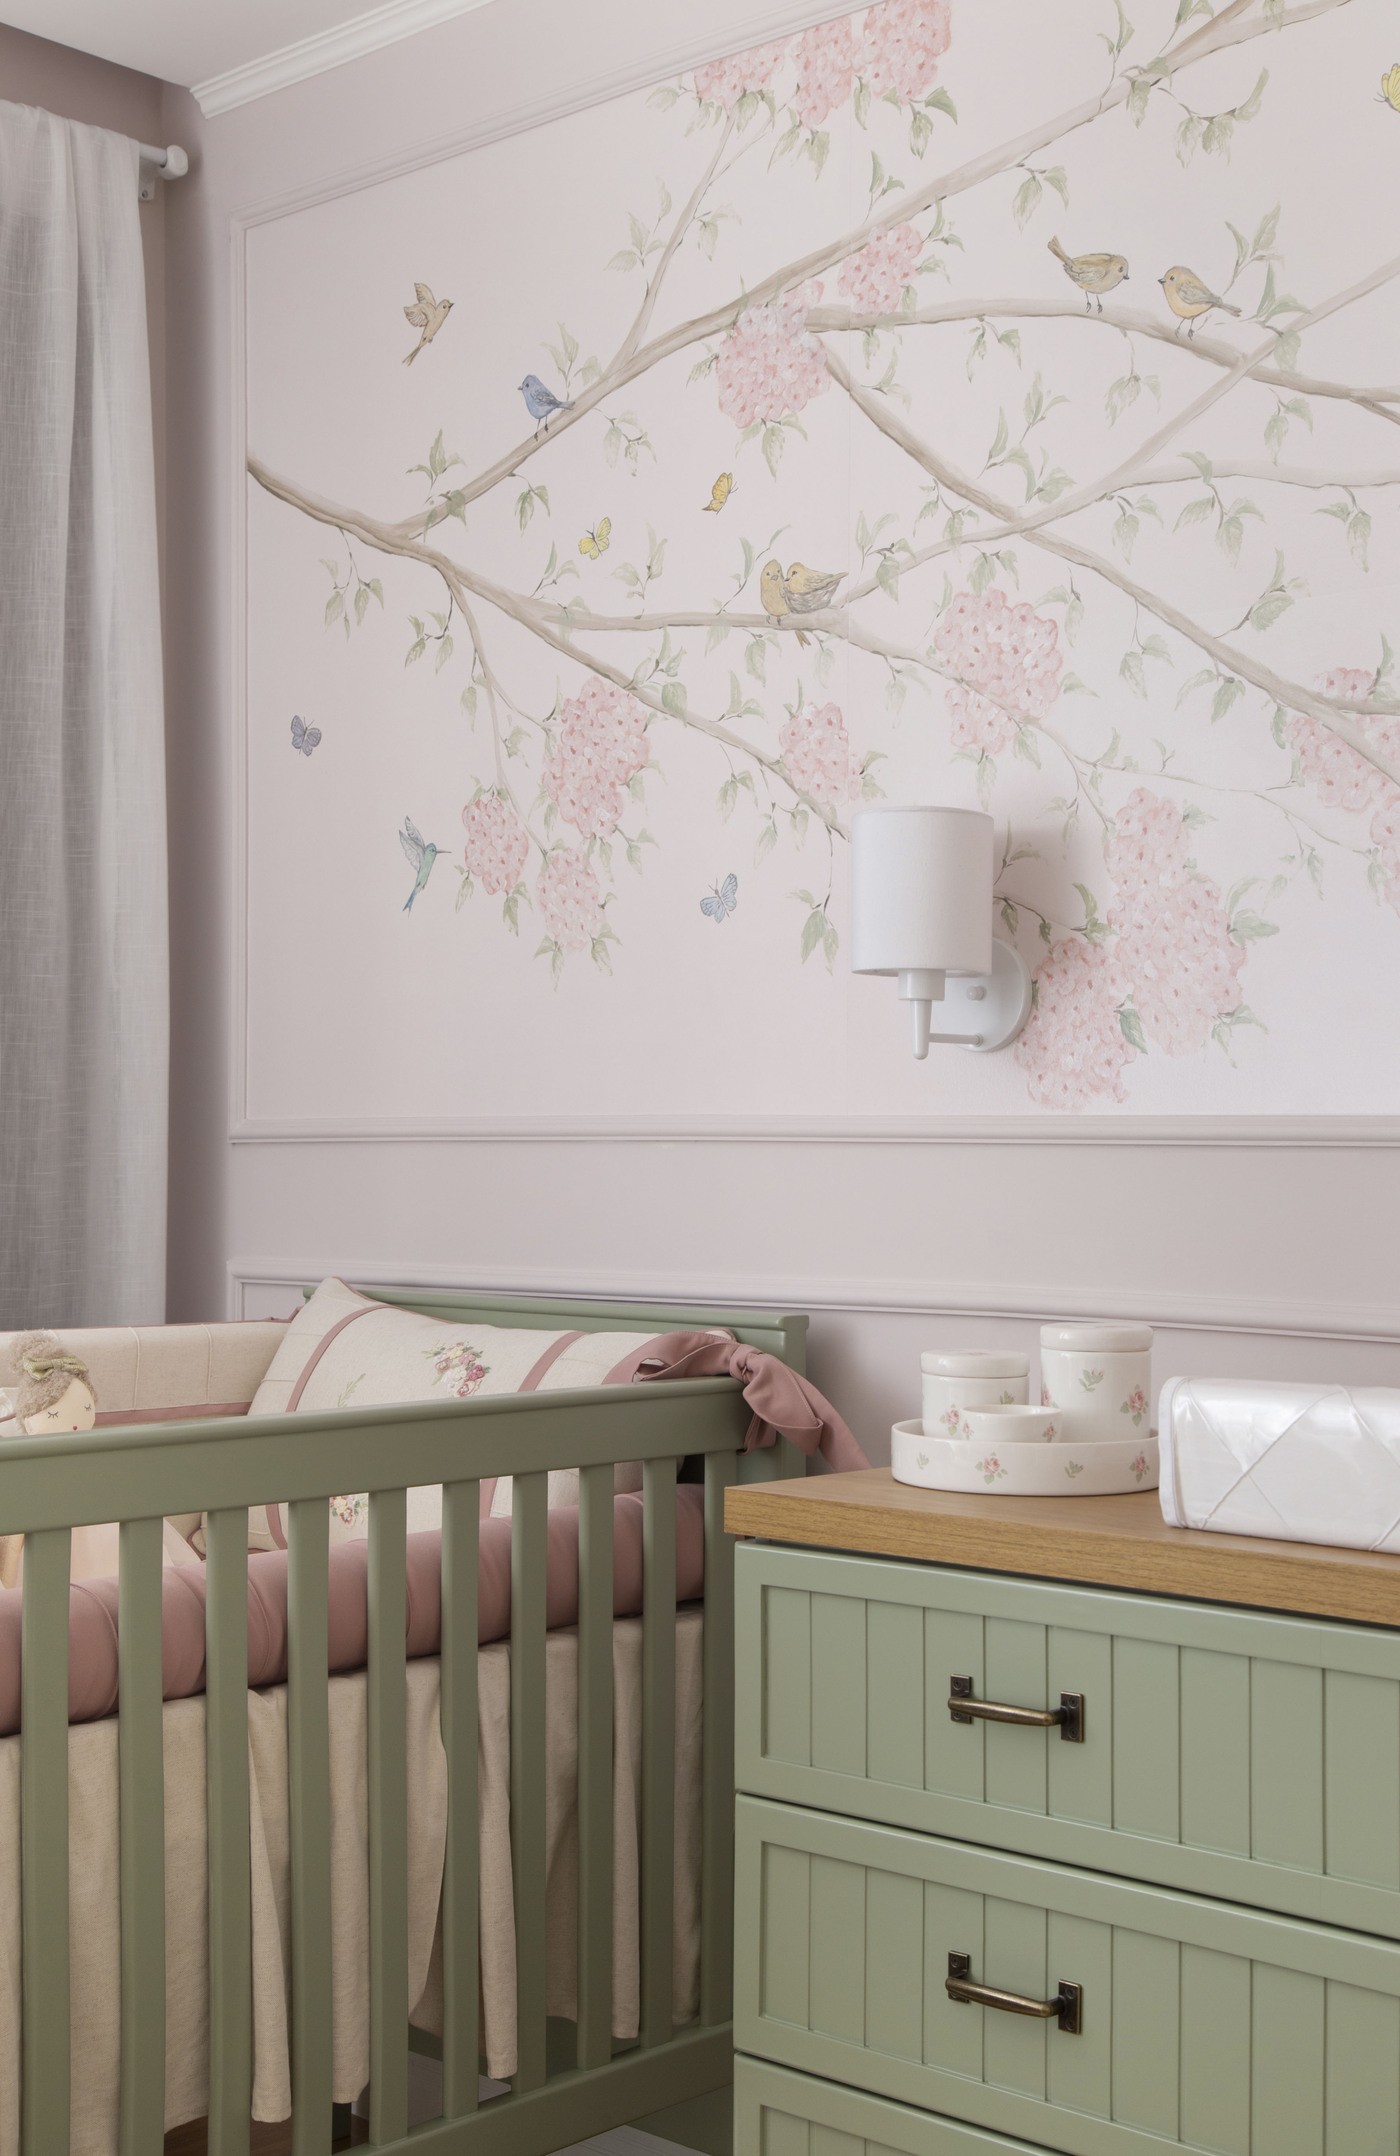 Décor do dia: quarto de bebê tem pintura inspirada em jardim provençal (Foto:  Raiana Medina)